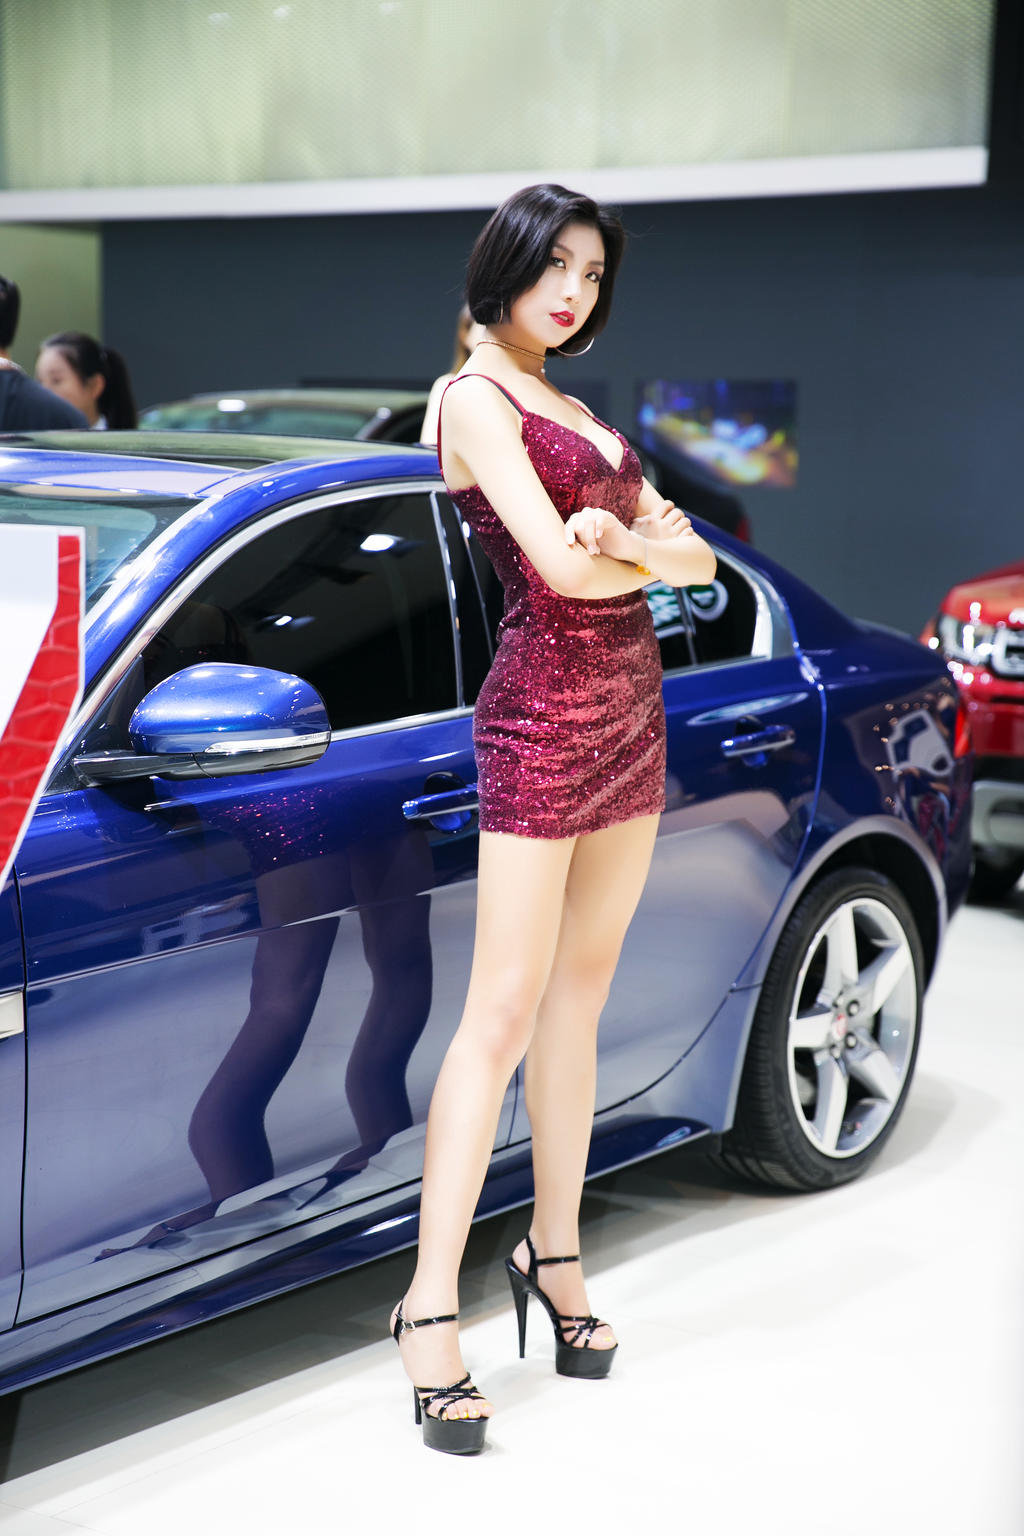 身高腿长的车模身材火gogo韩国makemodel最新资源图片